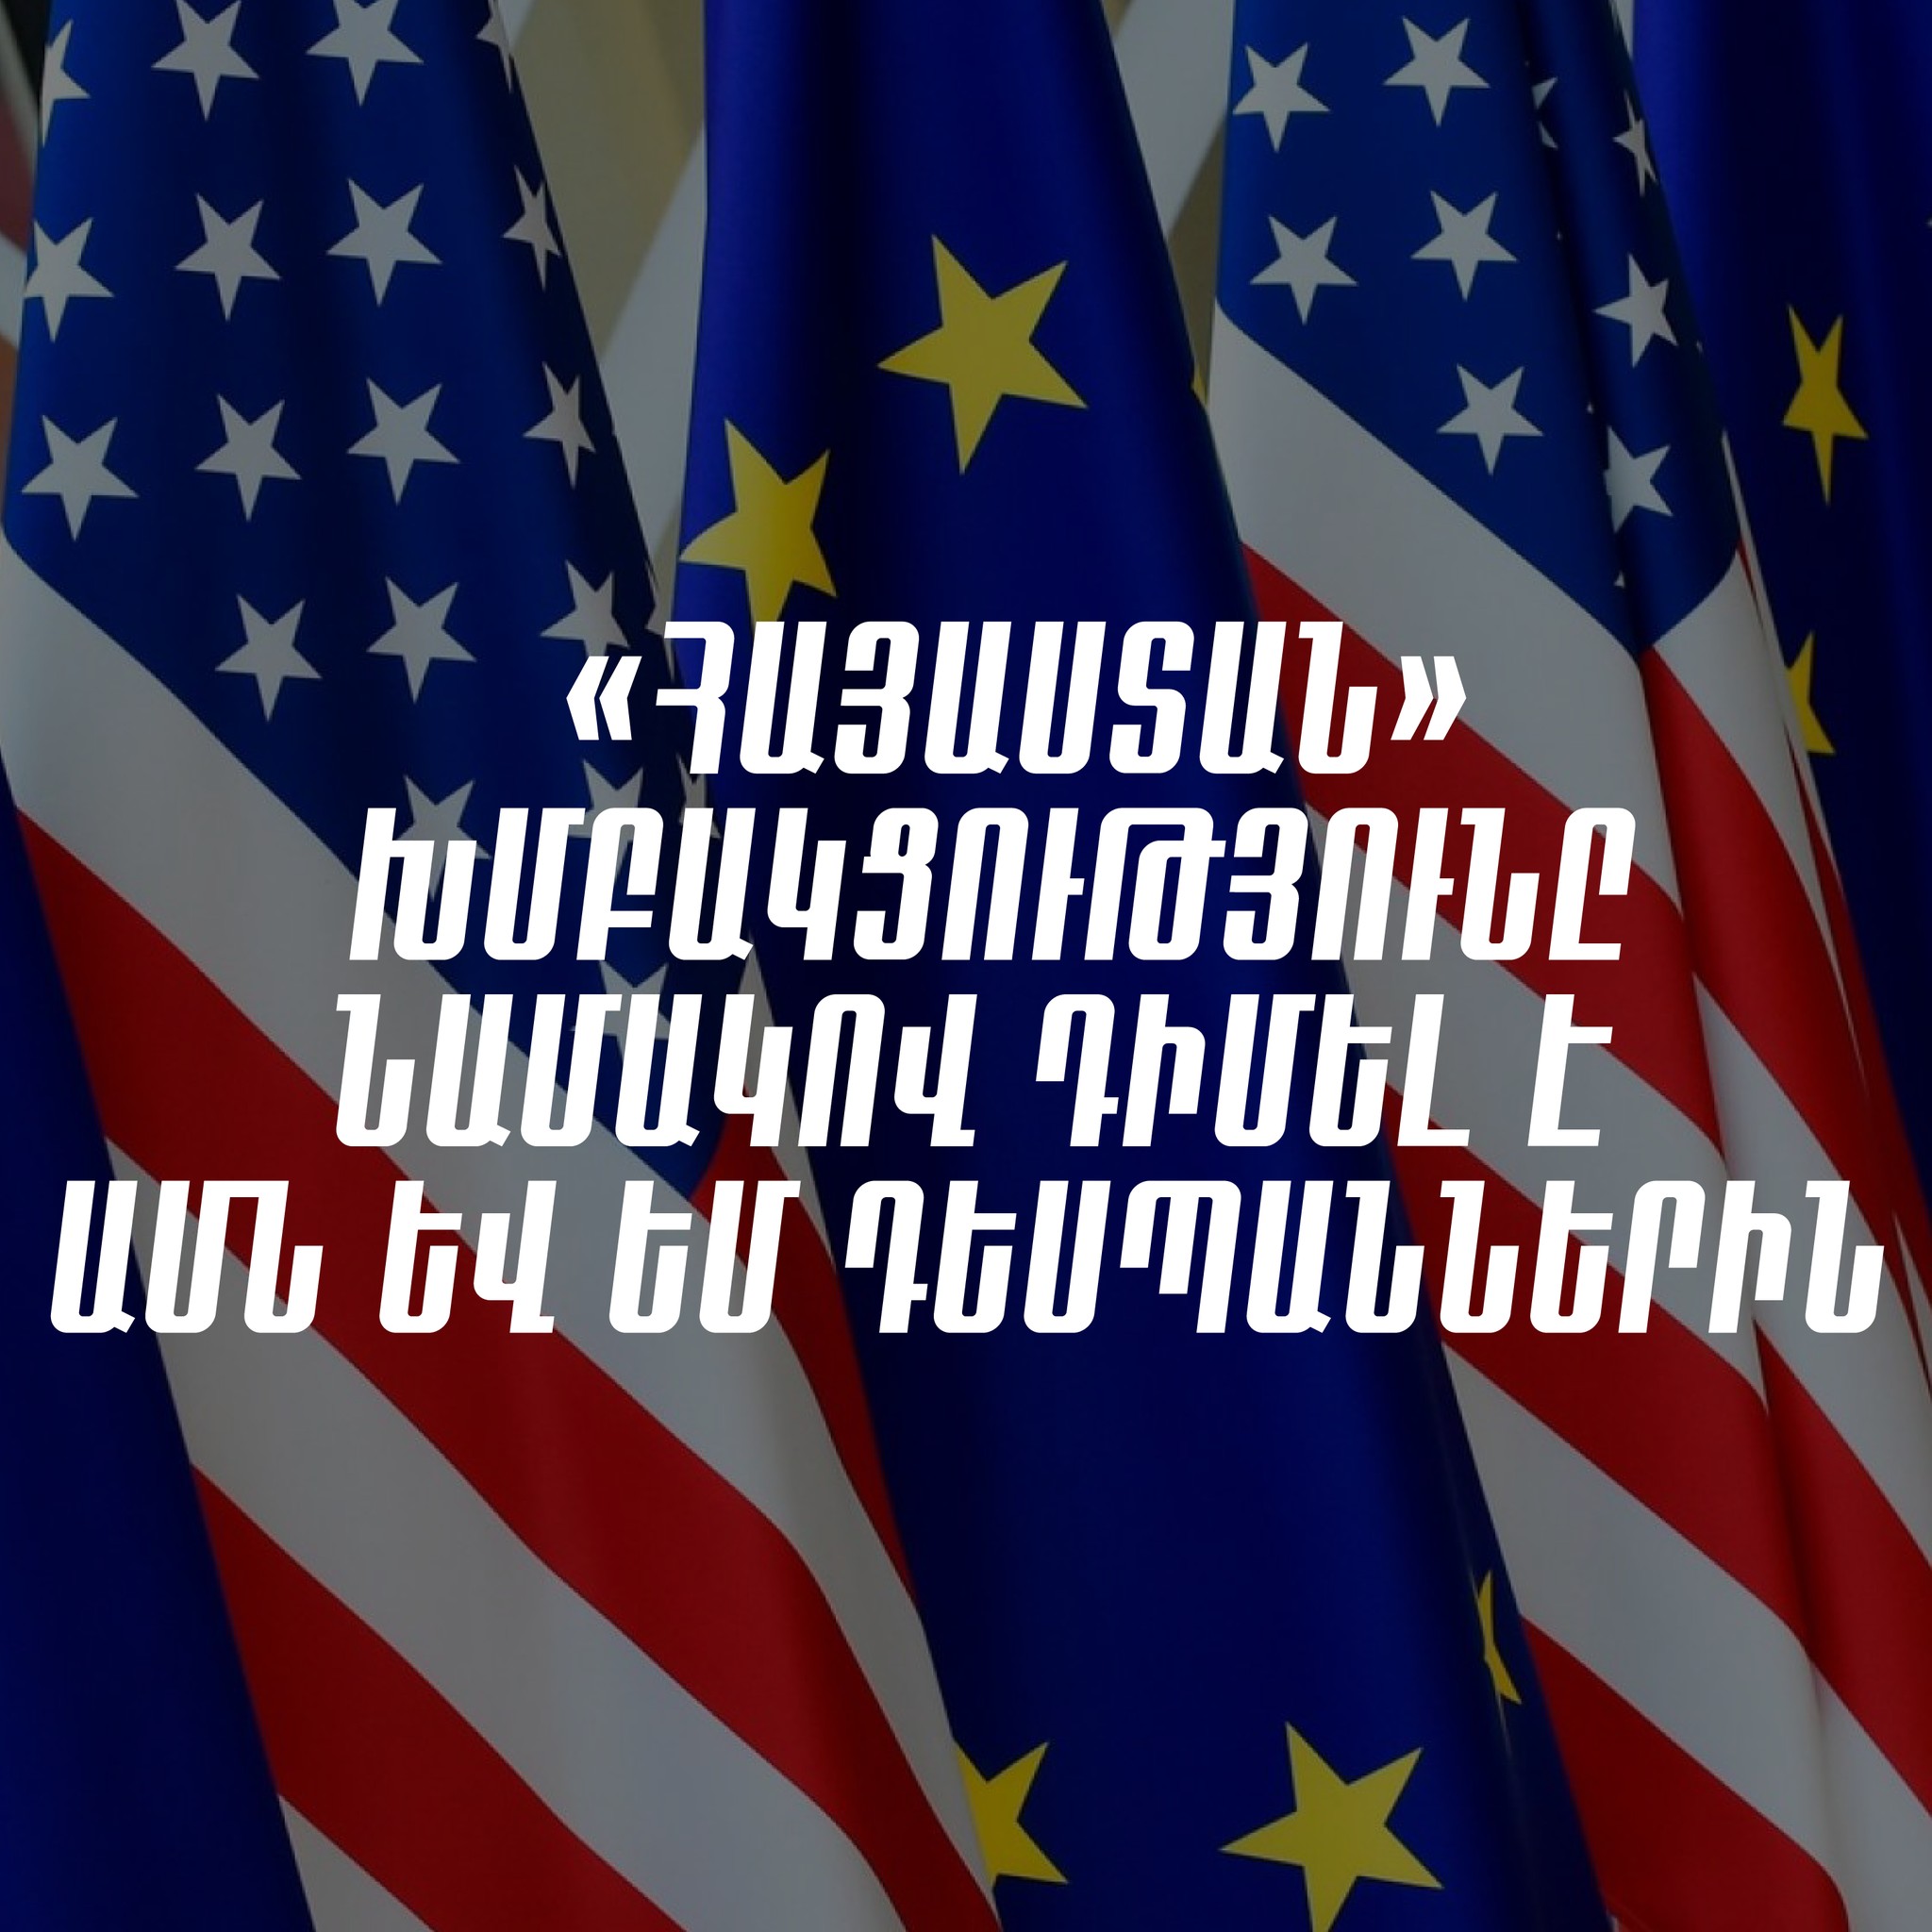 Публично высказать позицию по фактическому состоянию аудиозаписи и судебной, правоохранительной системы: "Армения" - послам США и ЕС в РА